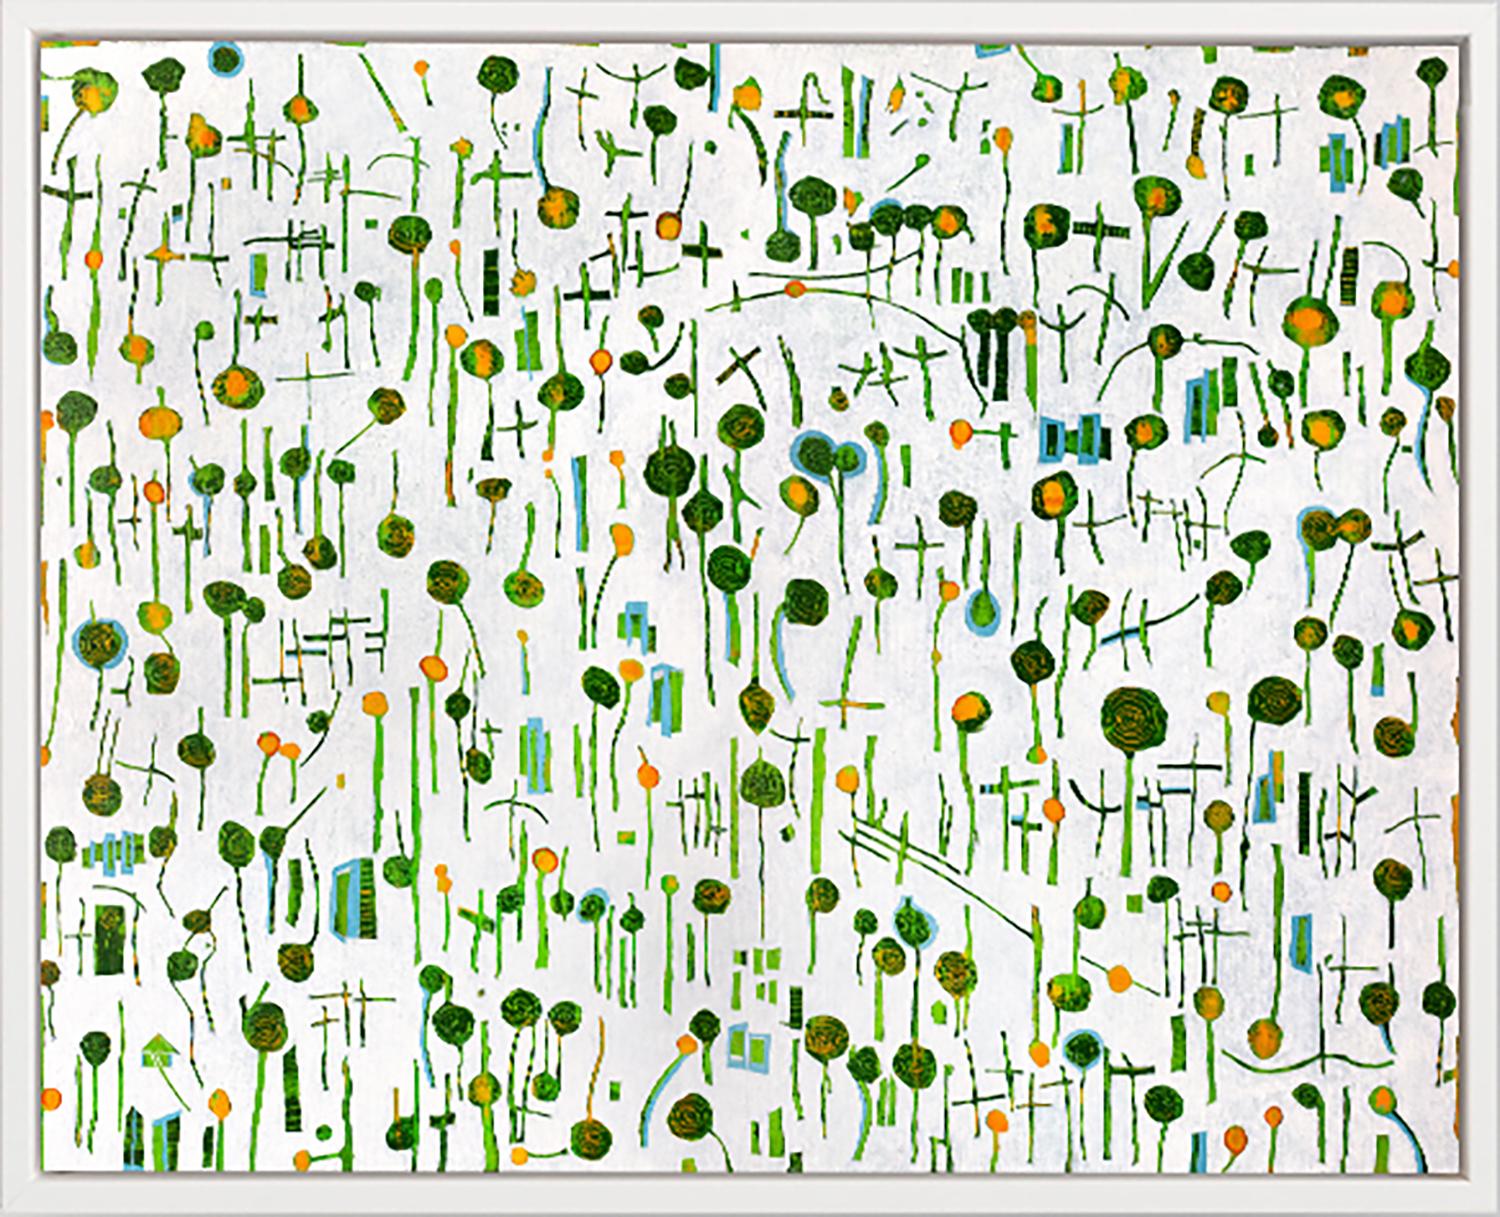 Abstract Print Sofie Swann - "Lollipops #2" Impression giclée en édition limitée, 16"" x 20""